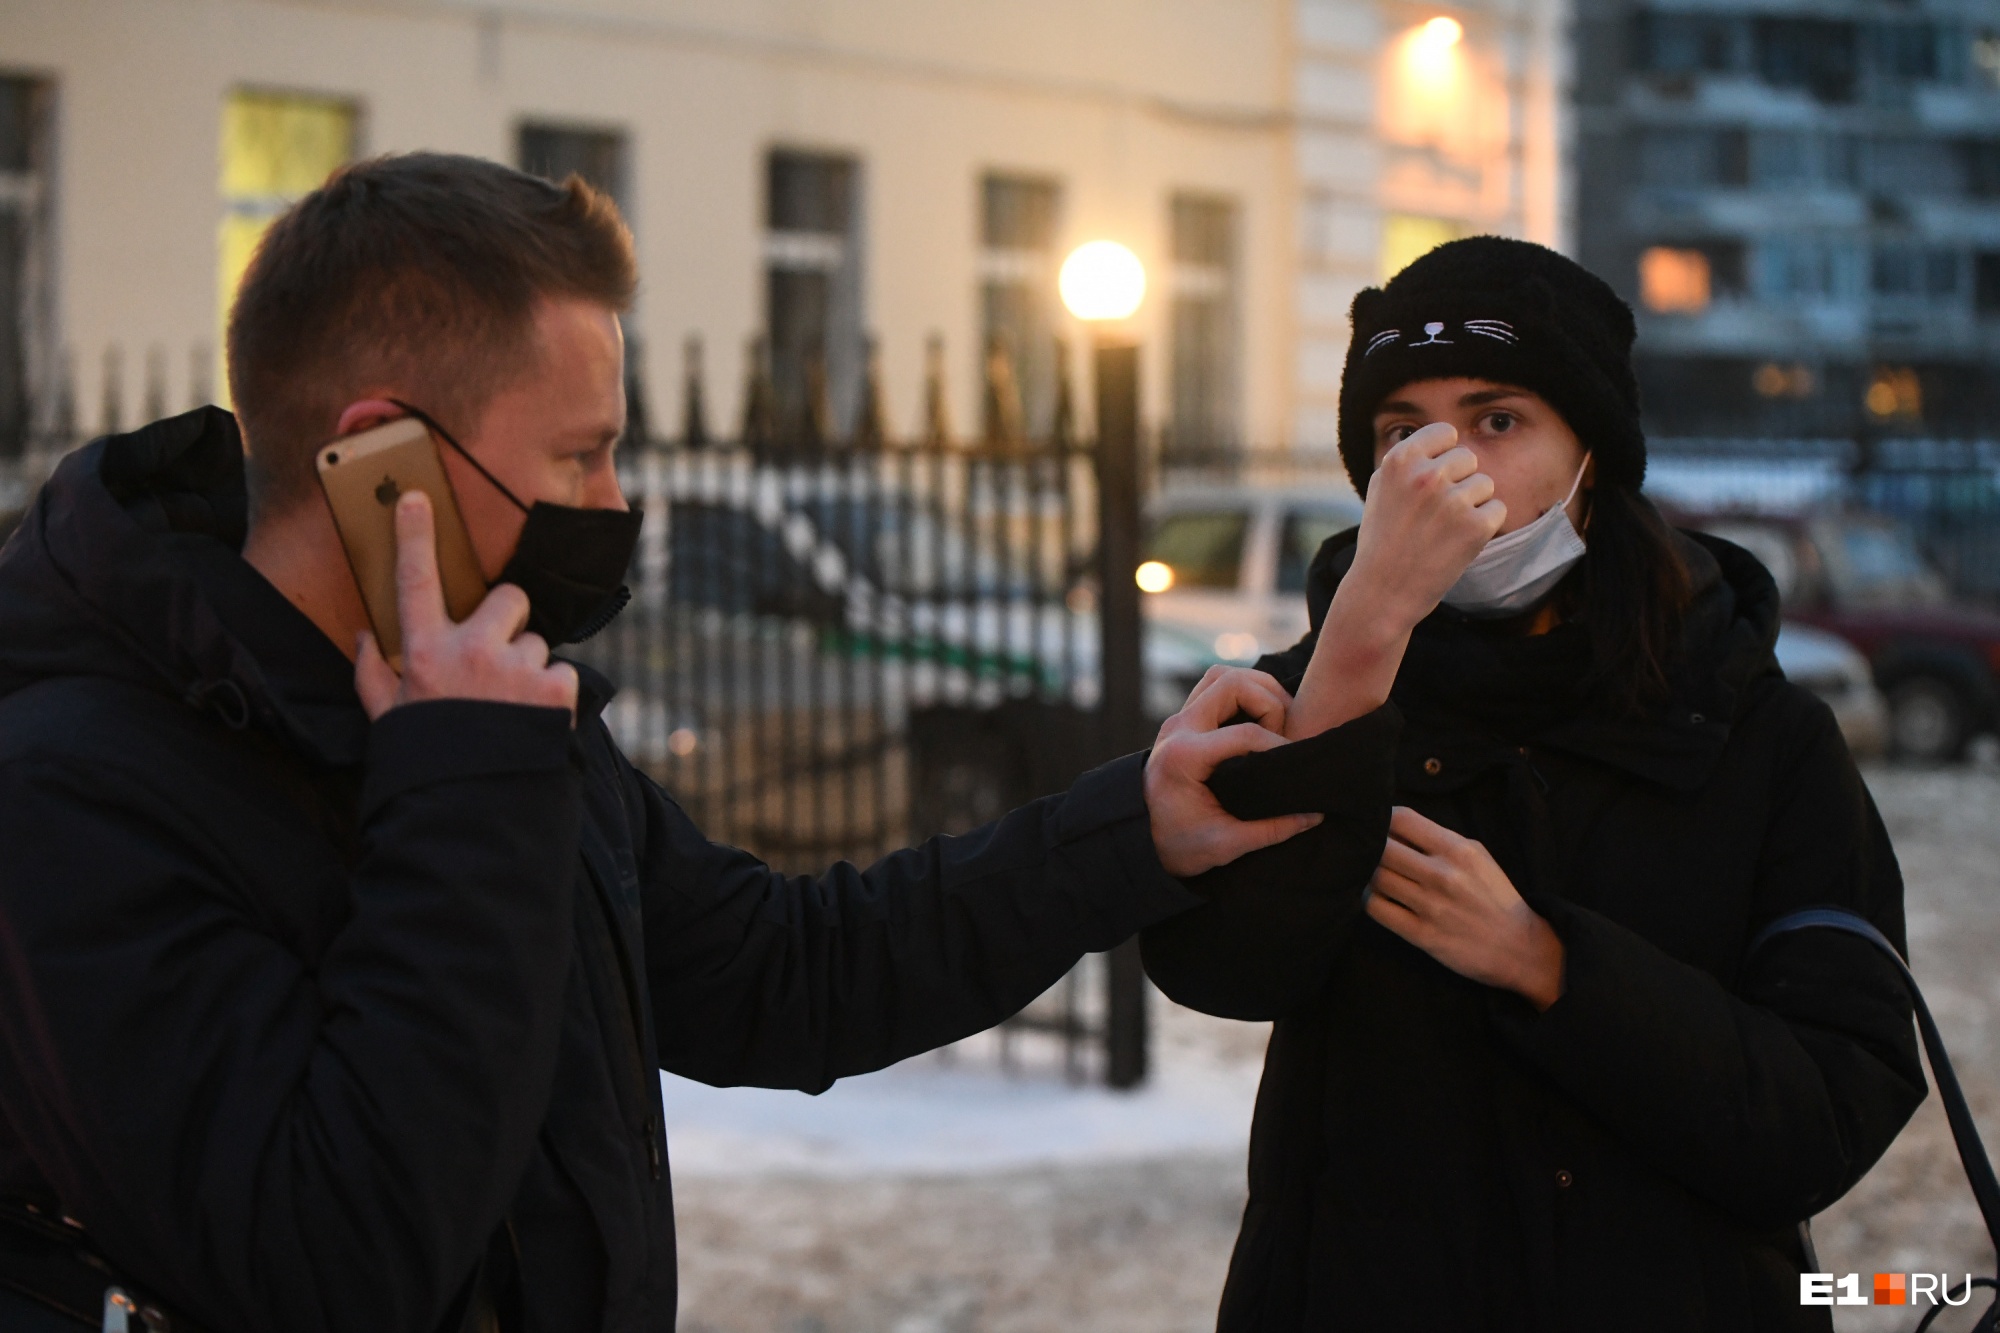 Сотрудницу штаба Навального обвинили в сопротивлении полицейским